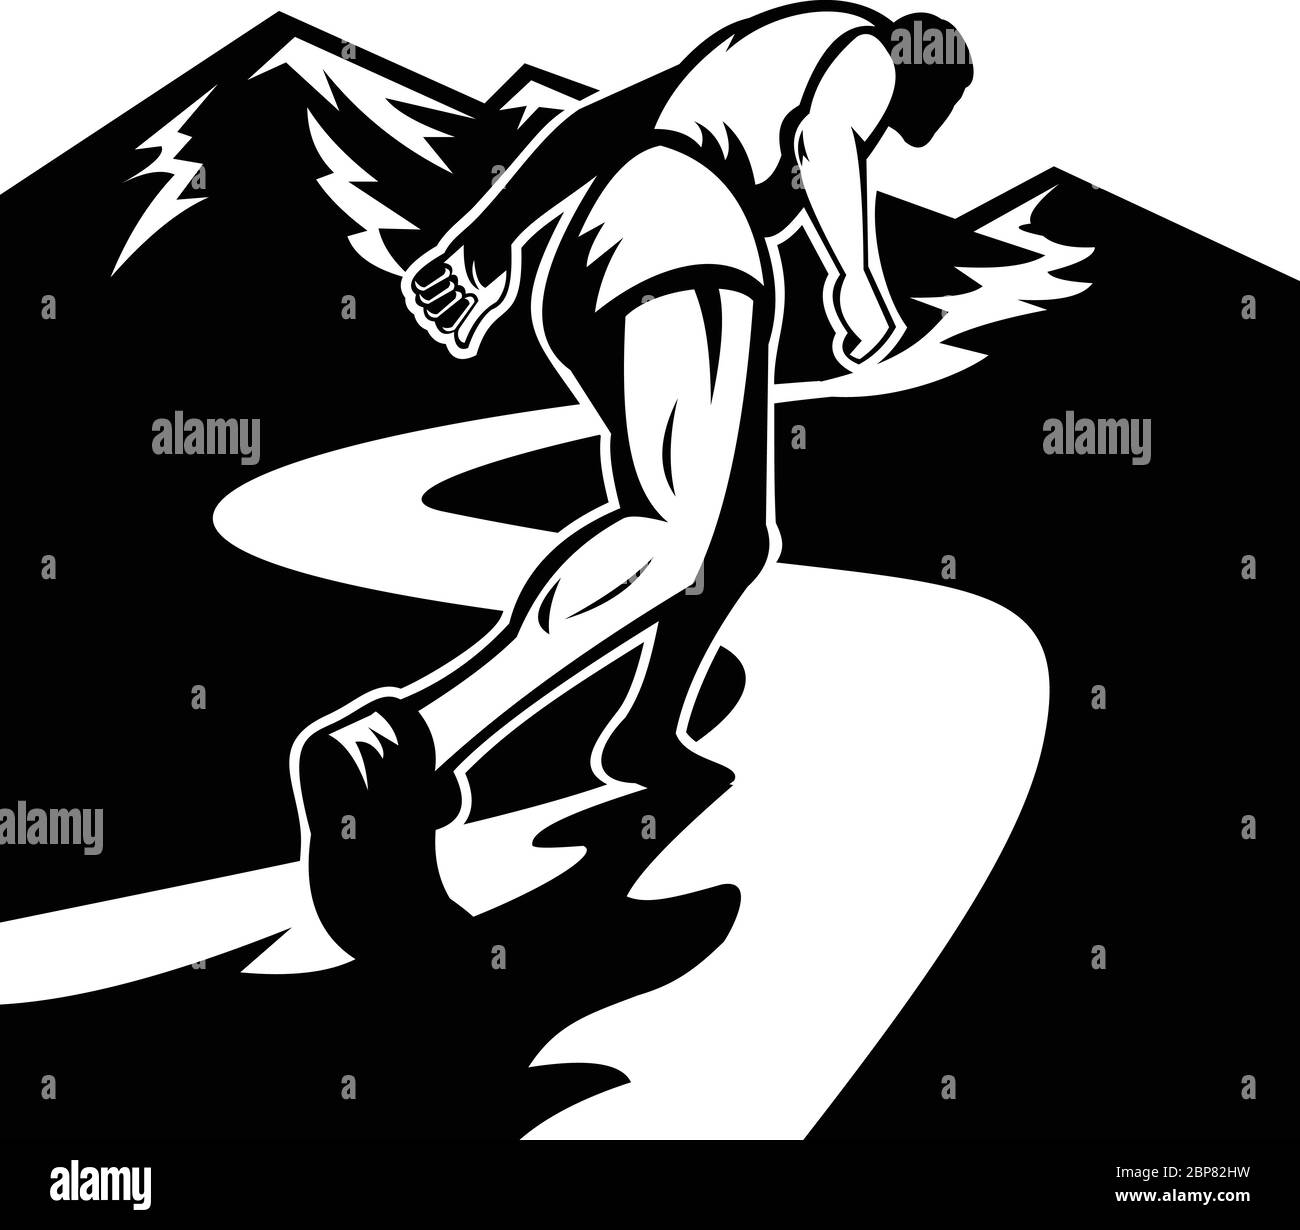 Illustrazione in stile retrò di una silhouette di un corridore maratona che corre e che lotta per correre in salita fino alla cima della montagna visto da un angolo basso fatto in Illustrazione Vettoriale